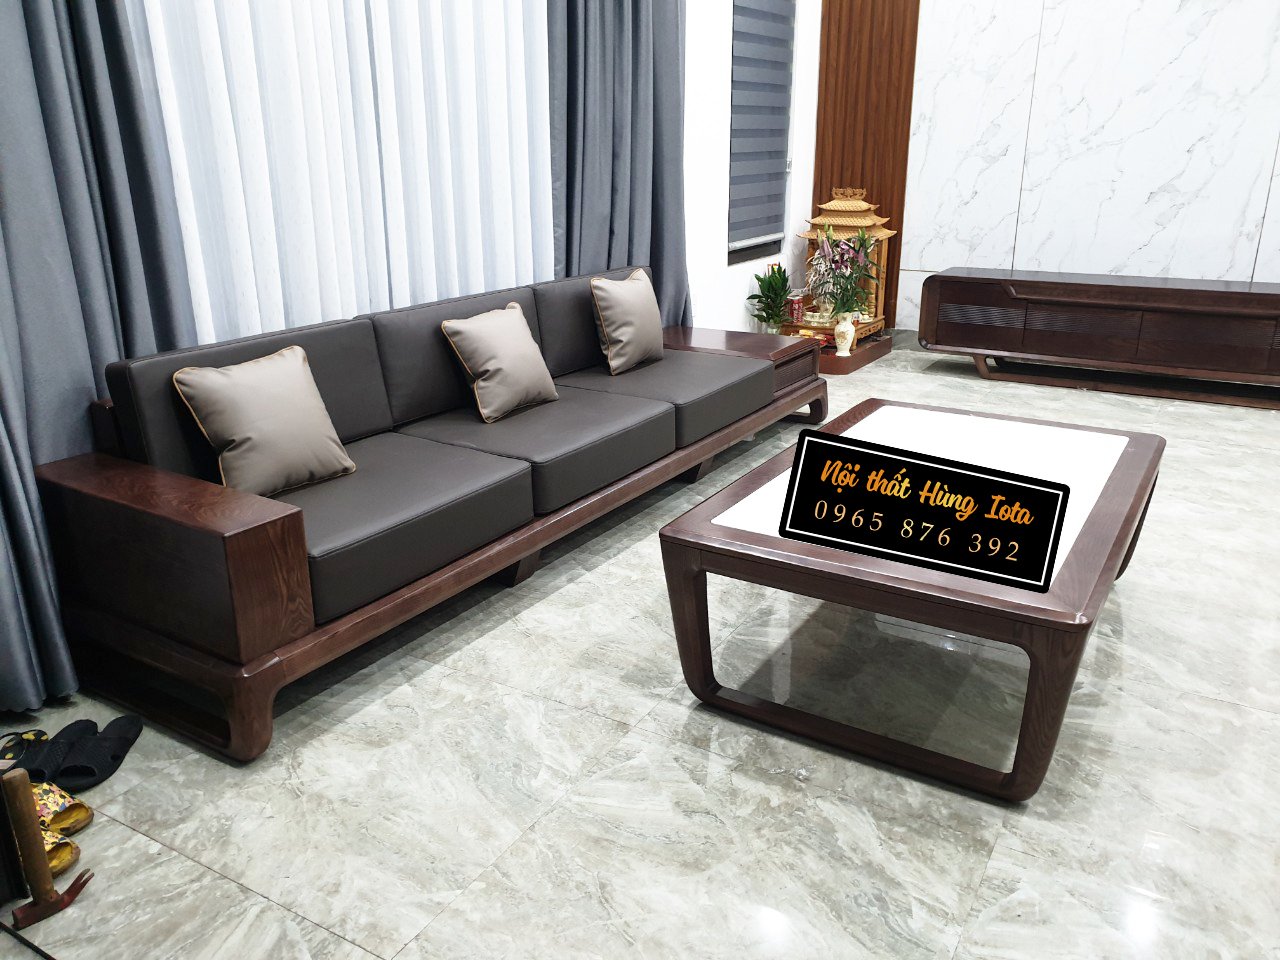 Bộ sofa gỗ đơn giản với thiết kế tinh tế, thanh lịch là lựa chọn hoàn hảo cho không gian sống của bạn trong năm